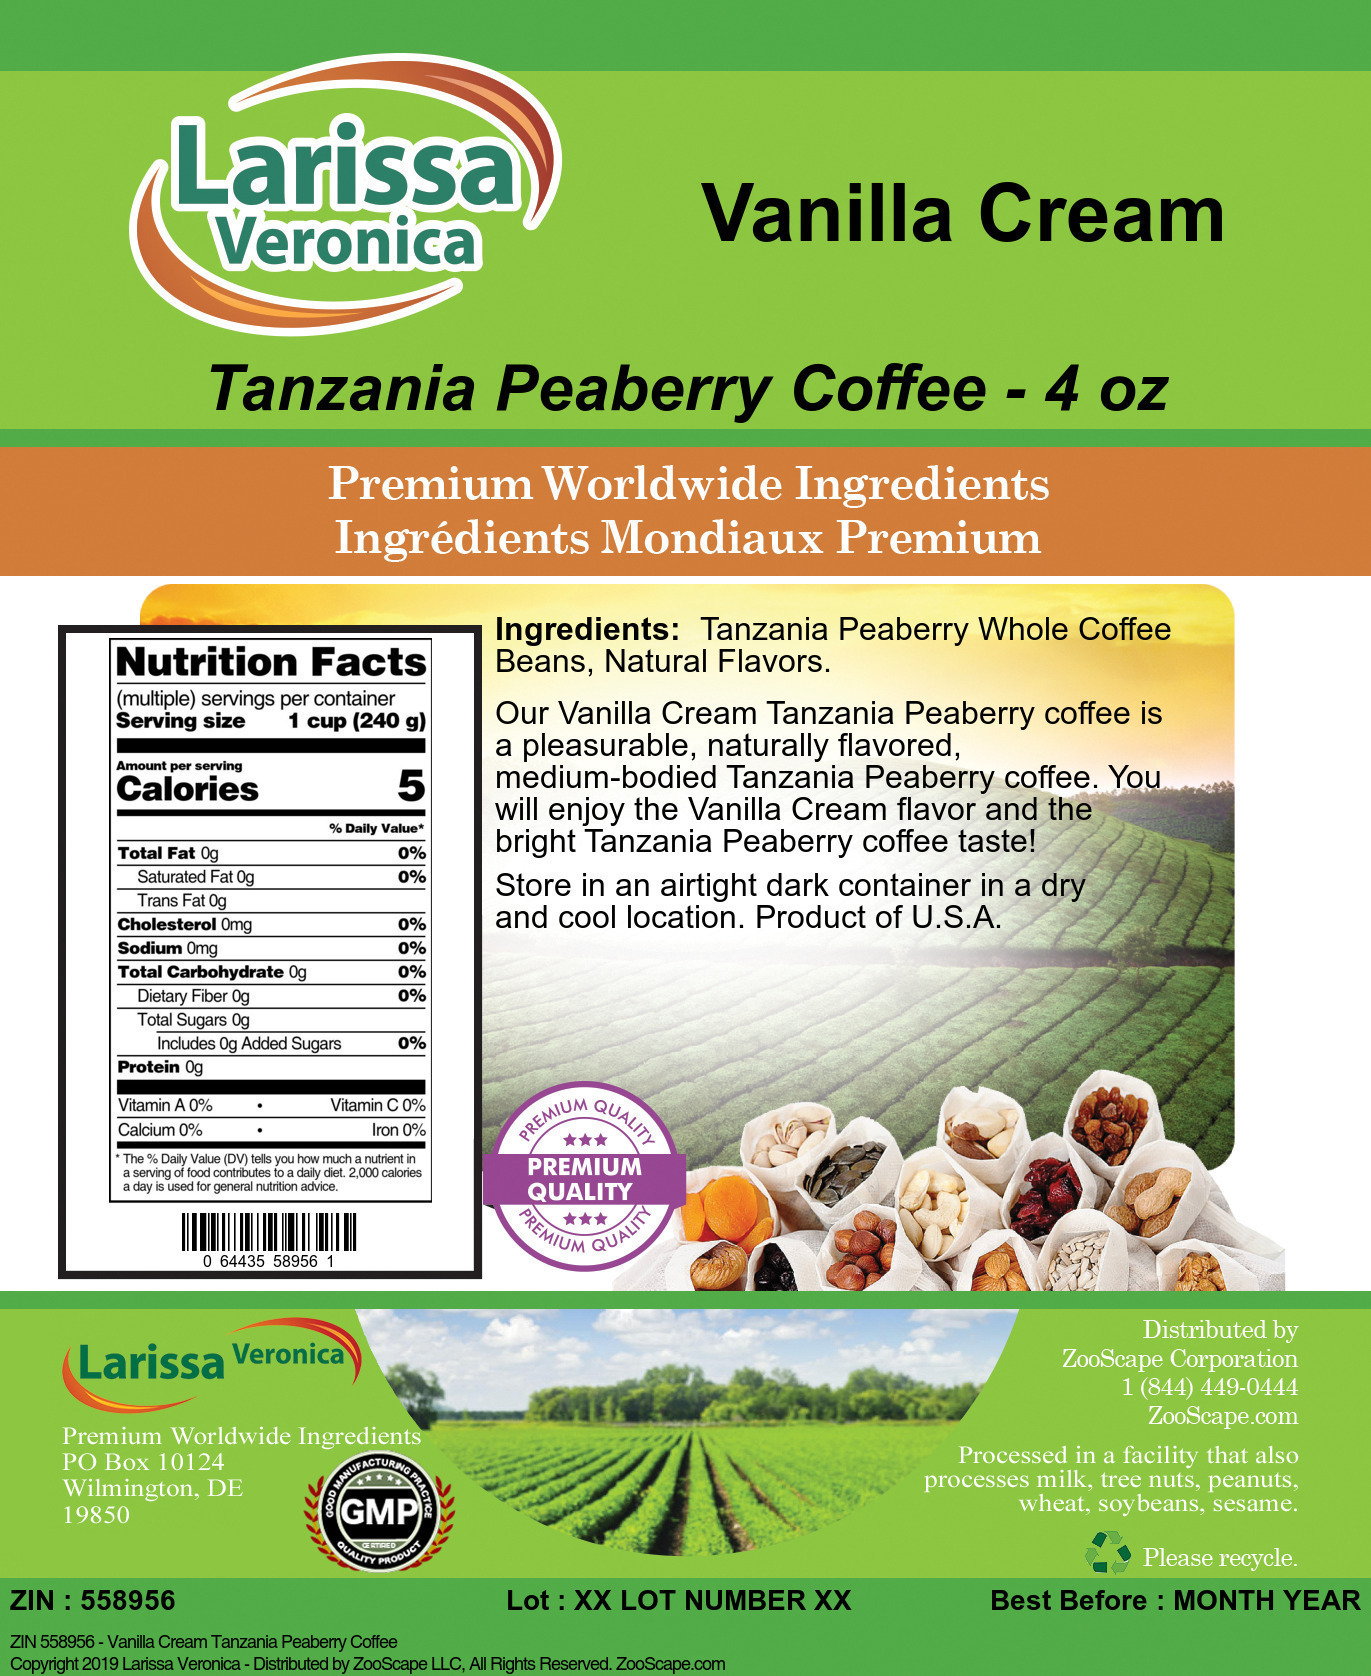 Vanilla Cream Tanzania Peaberry Coffee - Label